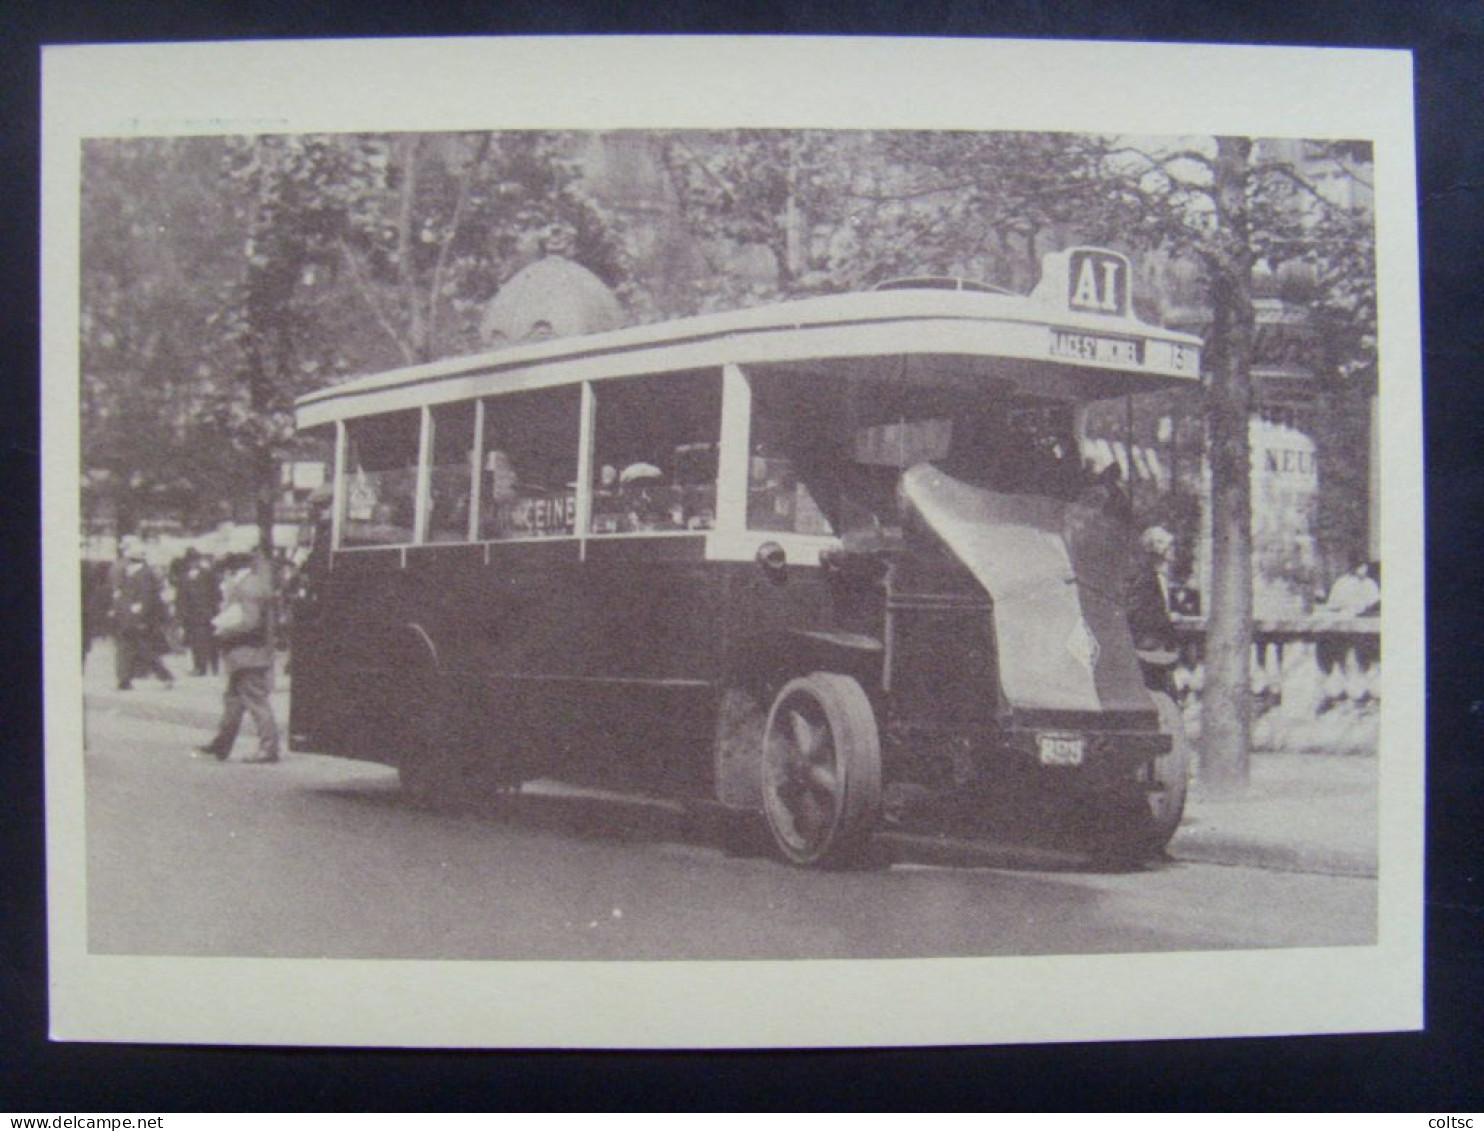 17753- Ensemble de 6 CP au type Becquet 80 c vert, repiquage RATP 70 ans d'autobus, Obl temporaire, dans leur pochette